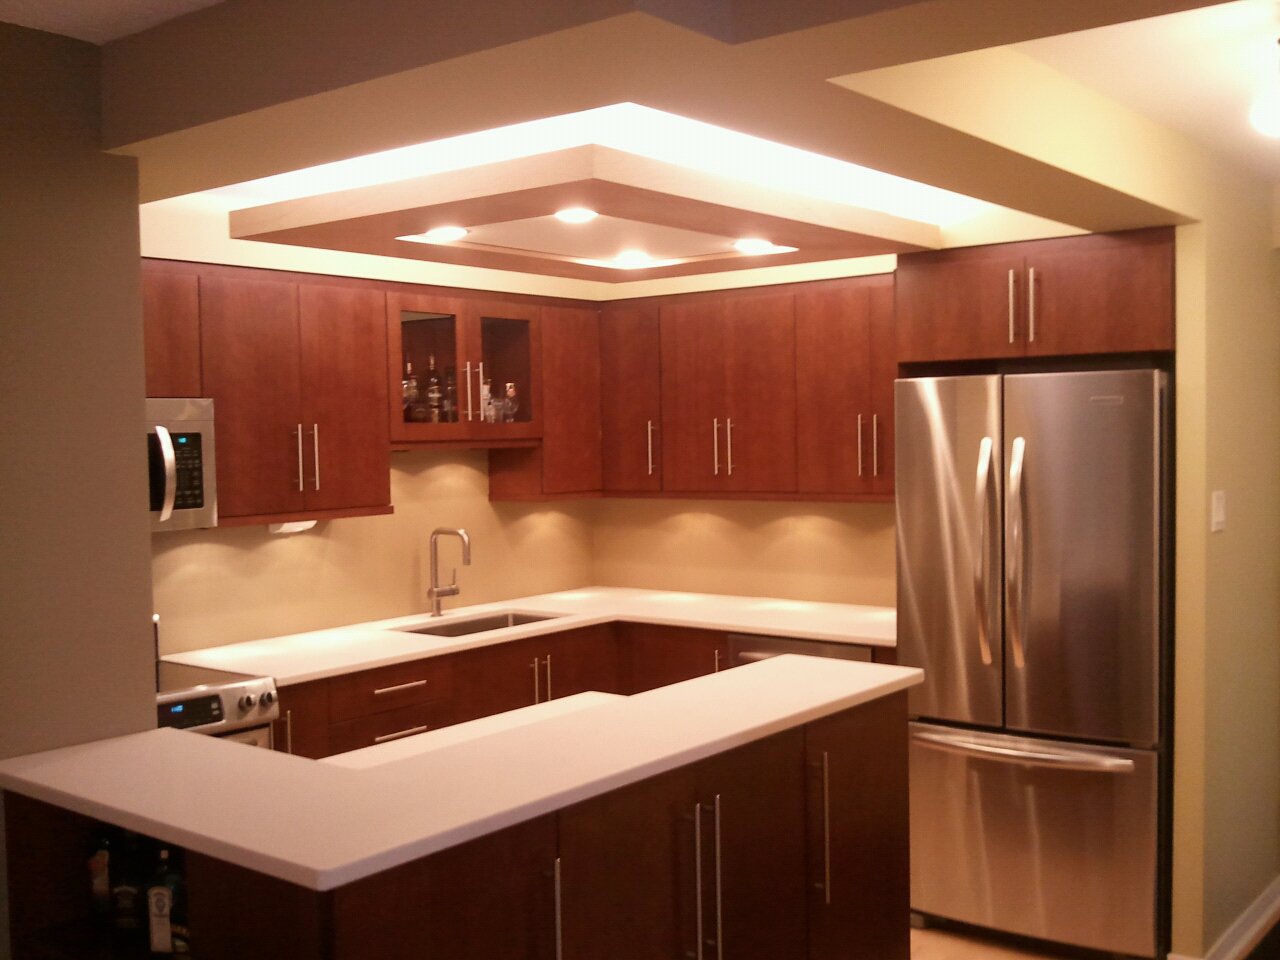 modern-kitchen-ceiling-designs